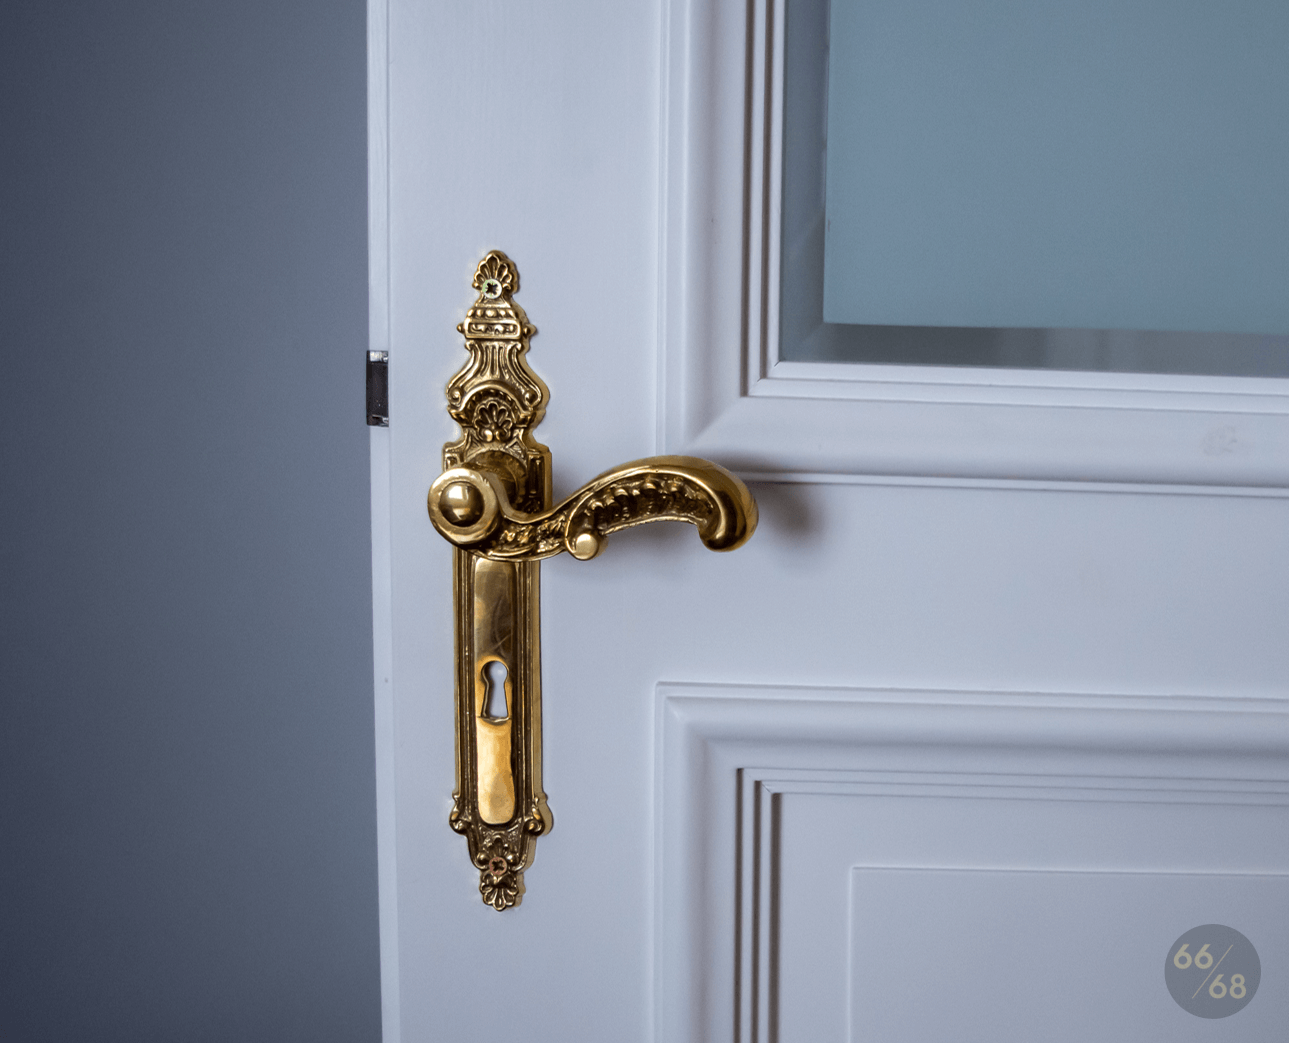 Na zdjęciu widoczny fragment drzwi ze zdobną złotą klamką stylizowaną na antyk.